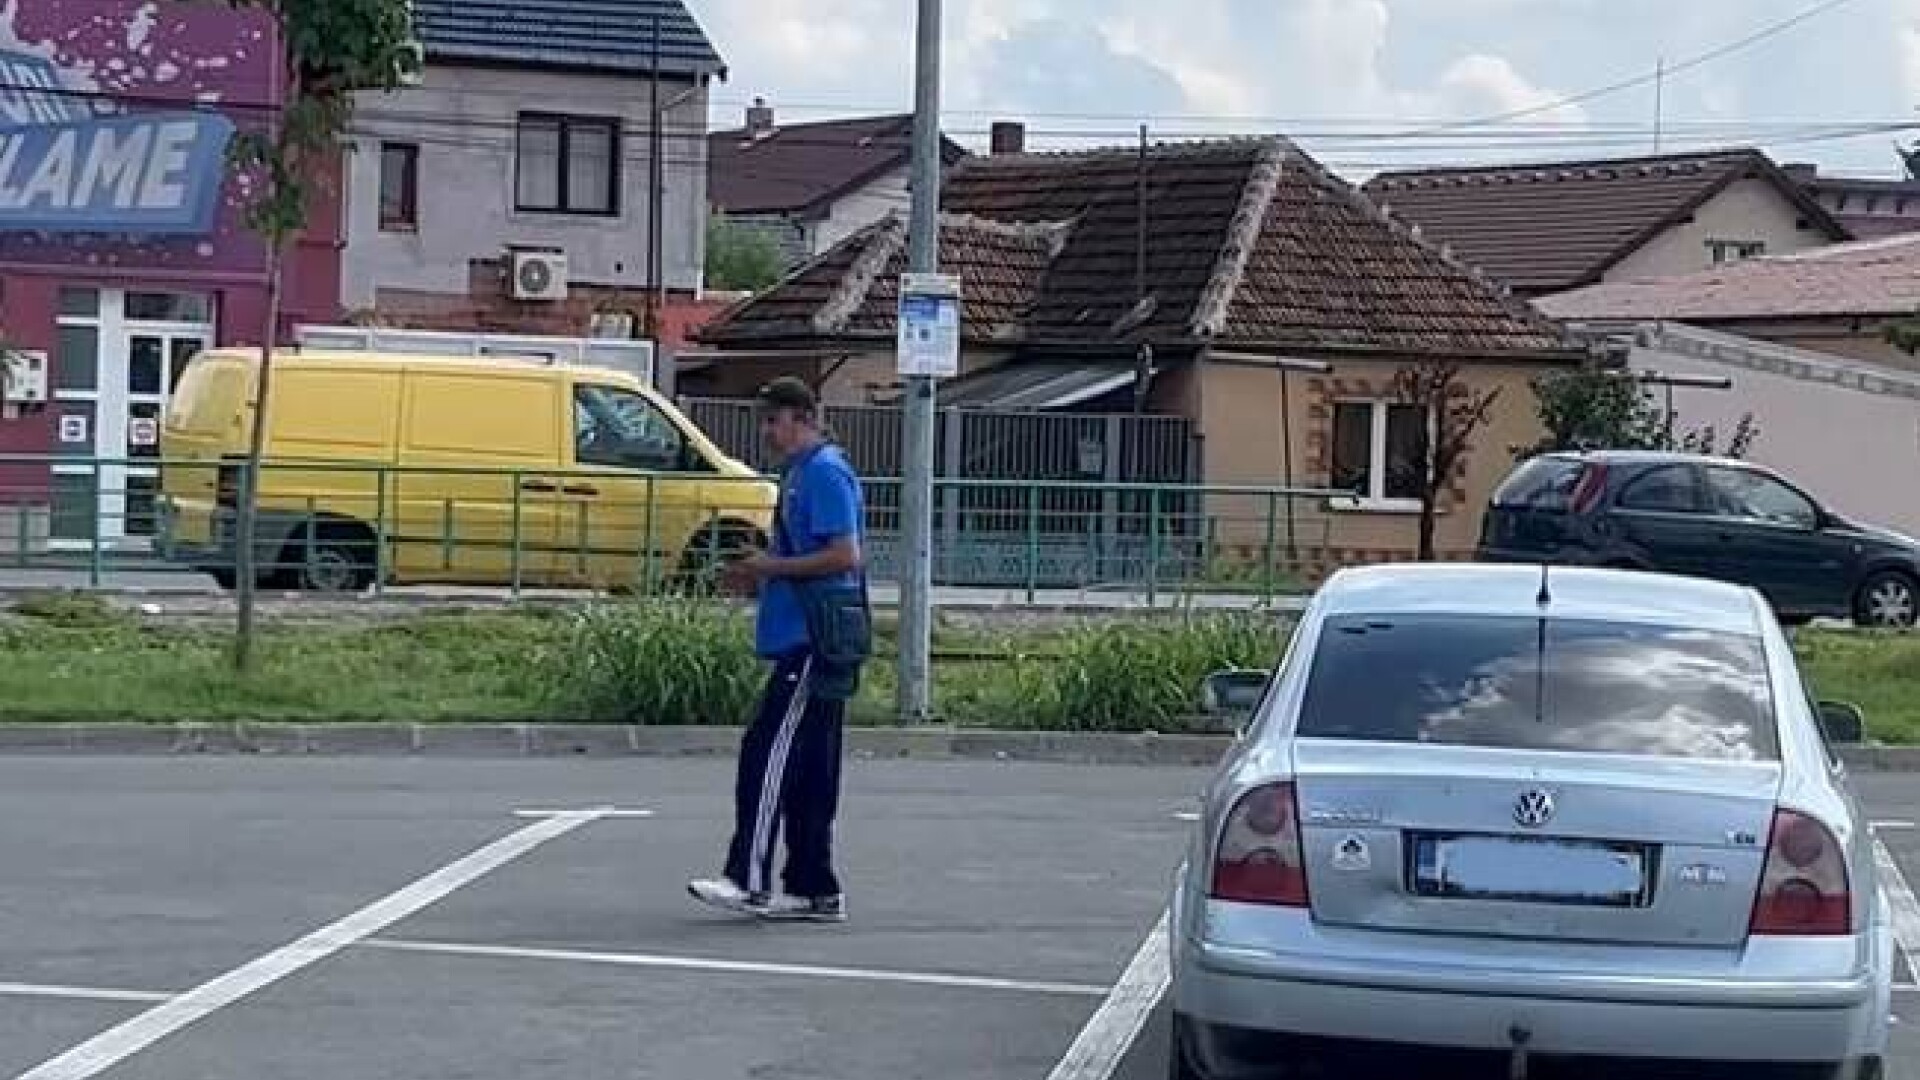 Parcagiu al Primăriei din Arad, beat de abia se ținea pe picioare, a împărțit amenzi. Ce s-a întâmplat după |VIDEO